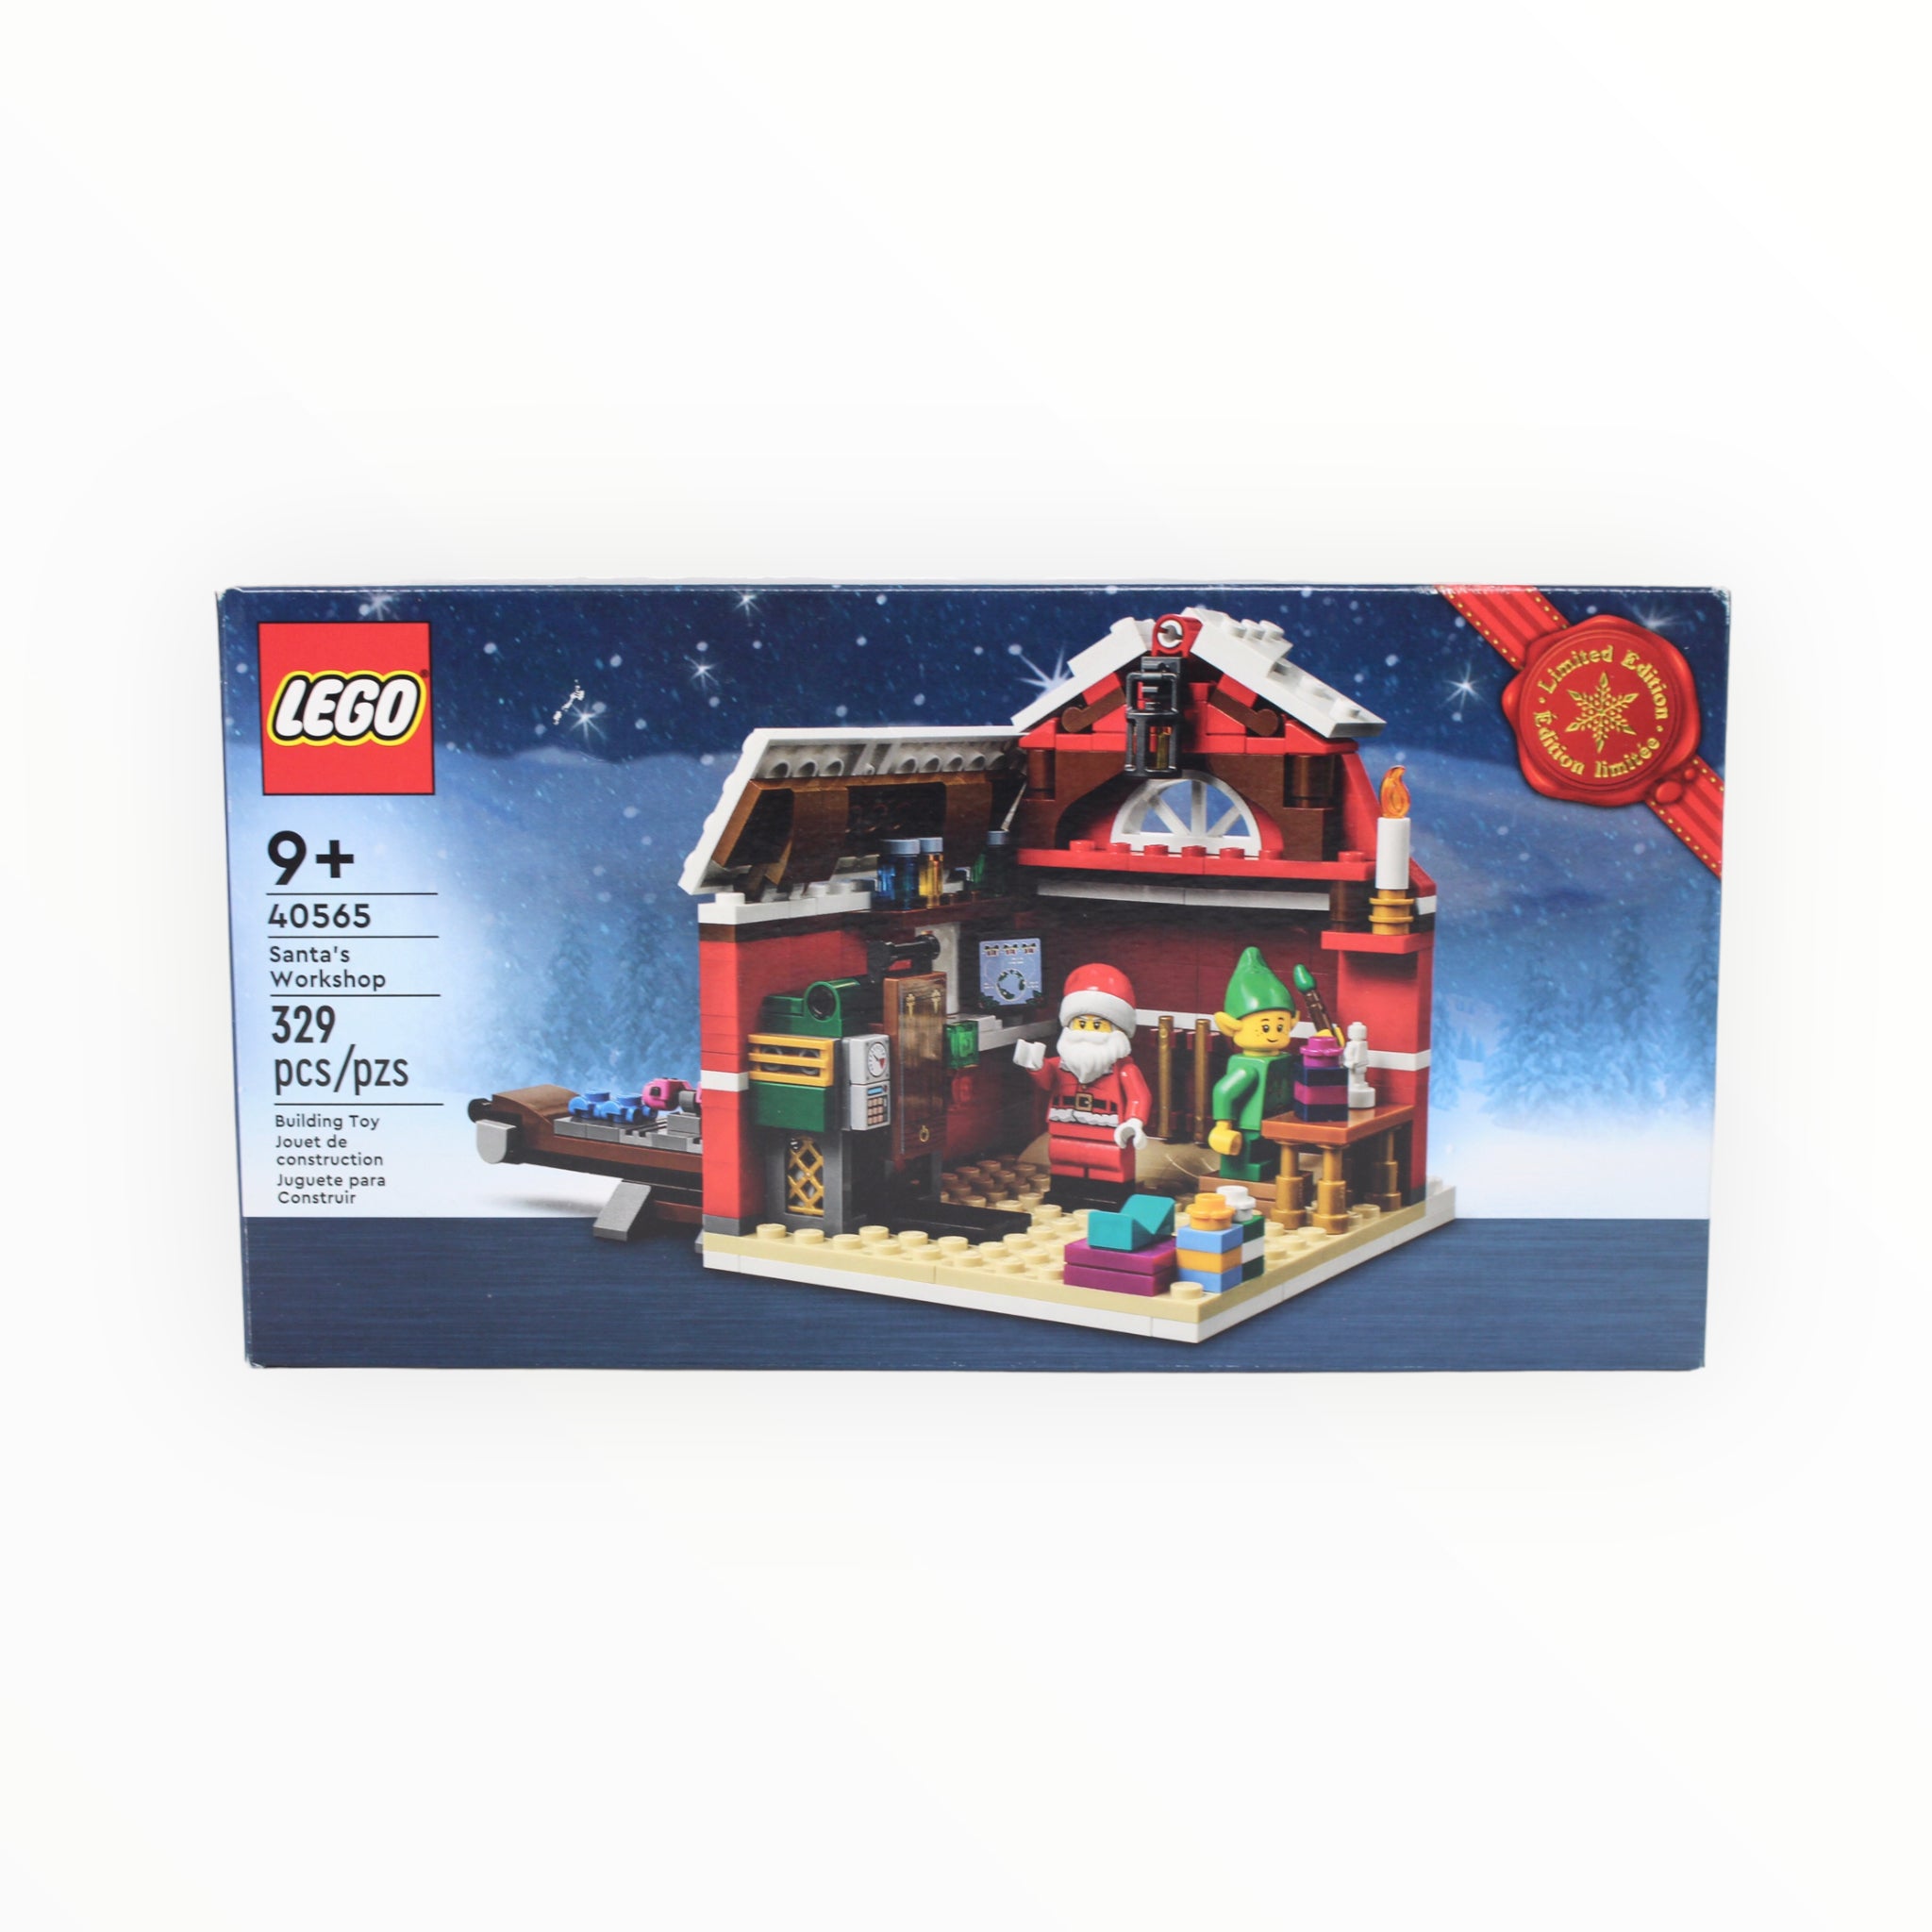 Certified Used Set 40565 LEGO Santa’s Workshop